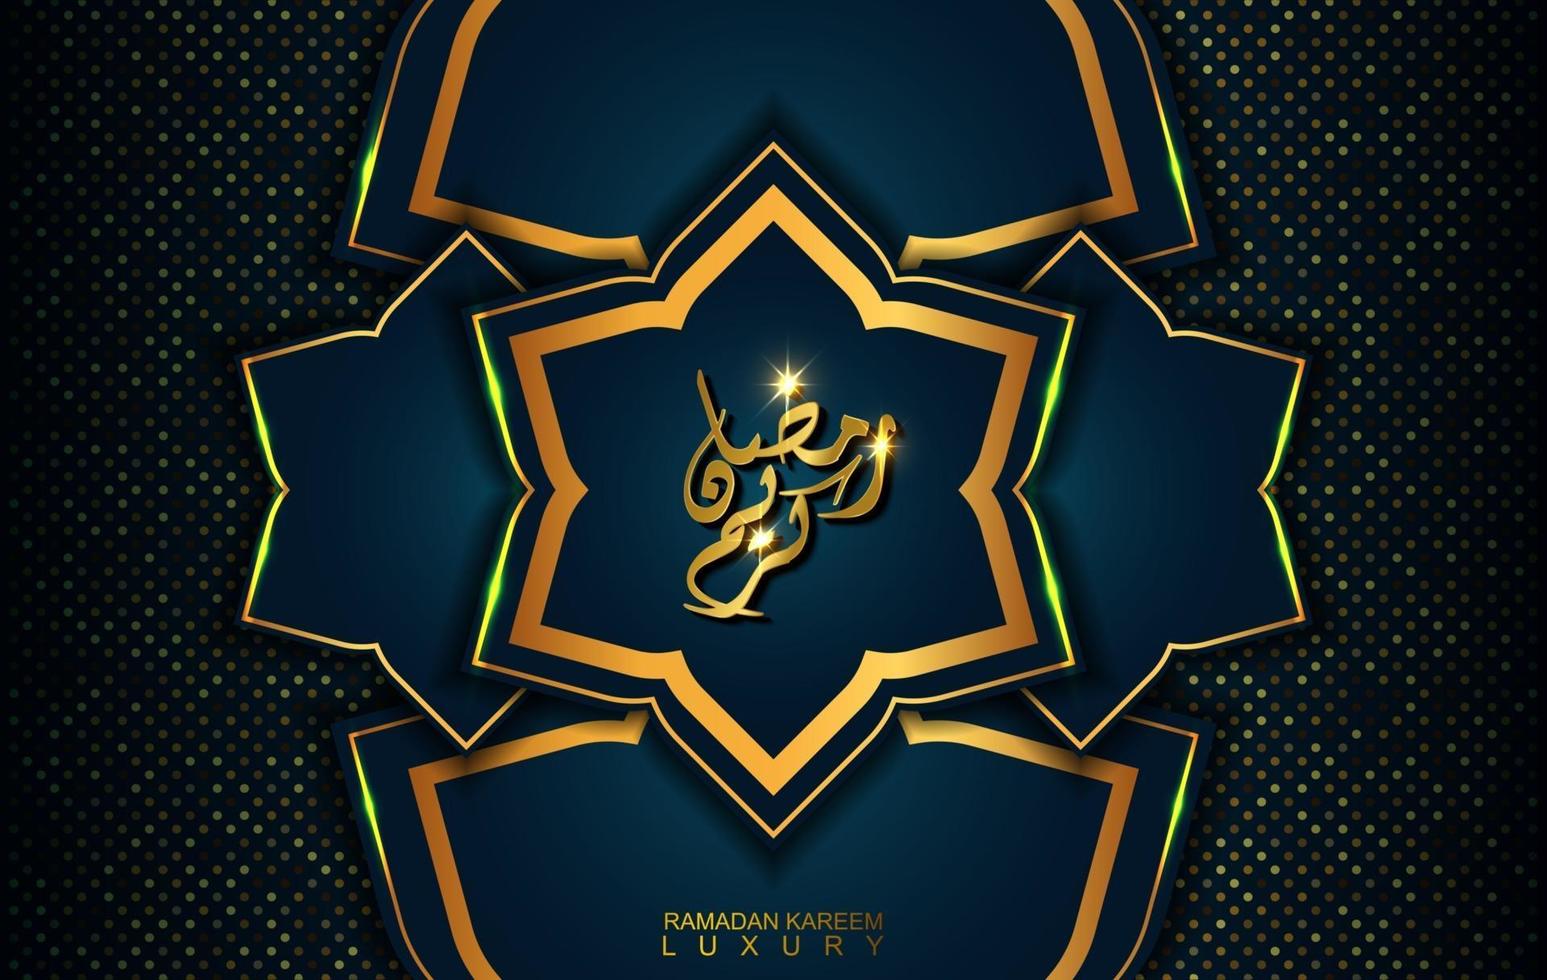 Ramadan Kareem in luxury style with Arabic calligraphy. Luxury golden mandala on dark blue background for Ramadan Mubarak vector